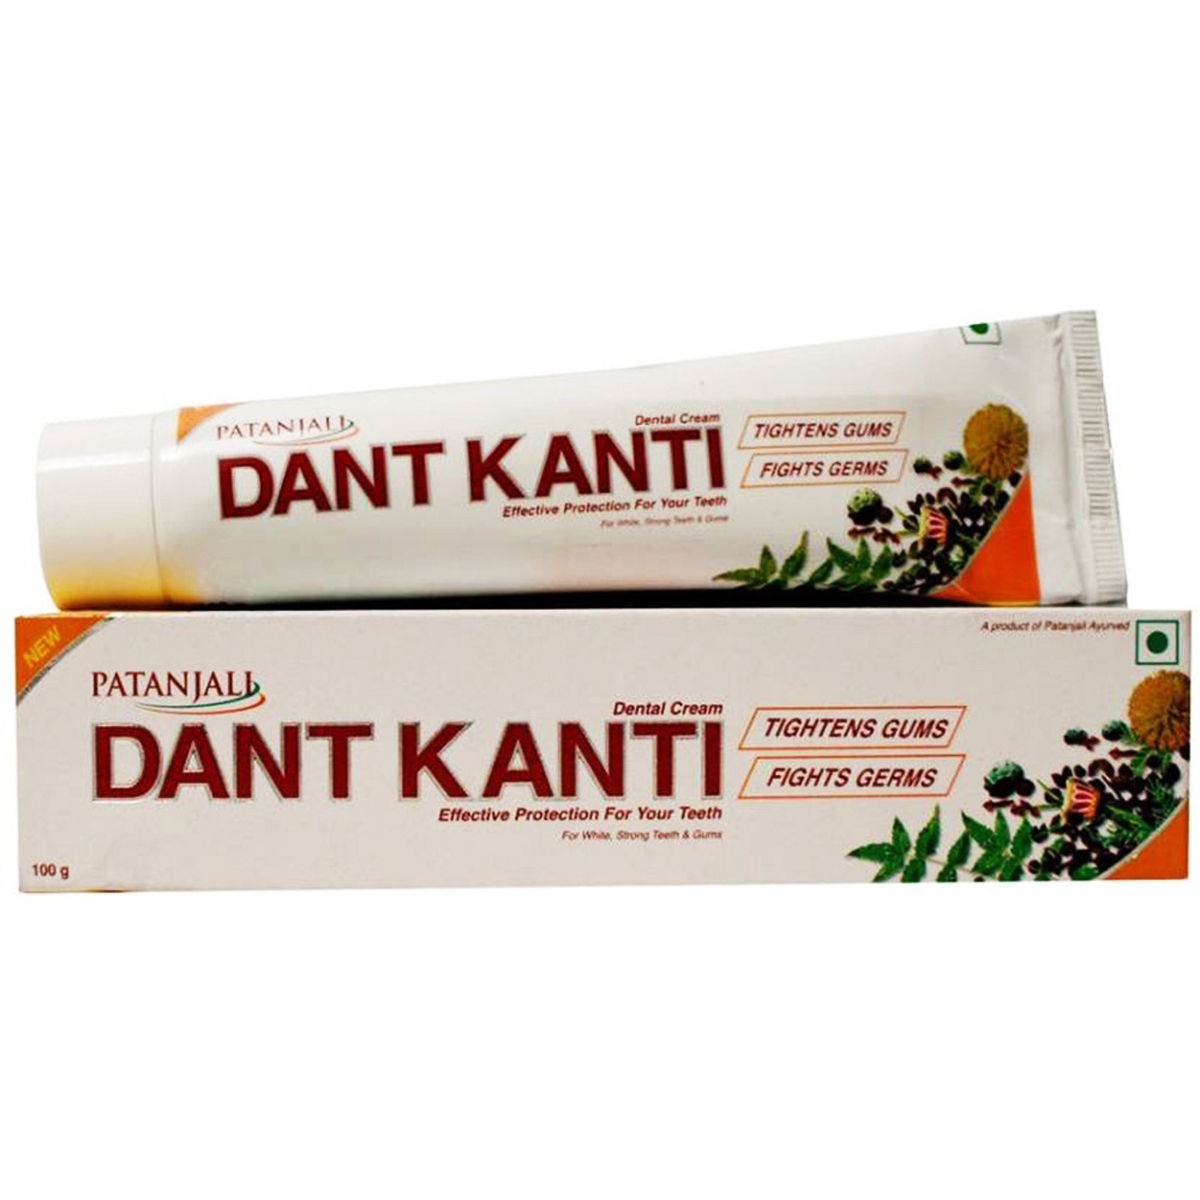 Patanjali Dant Kanti Dental Cream, 100 gm, Pack of 1 